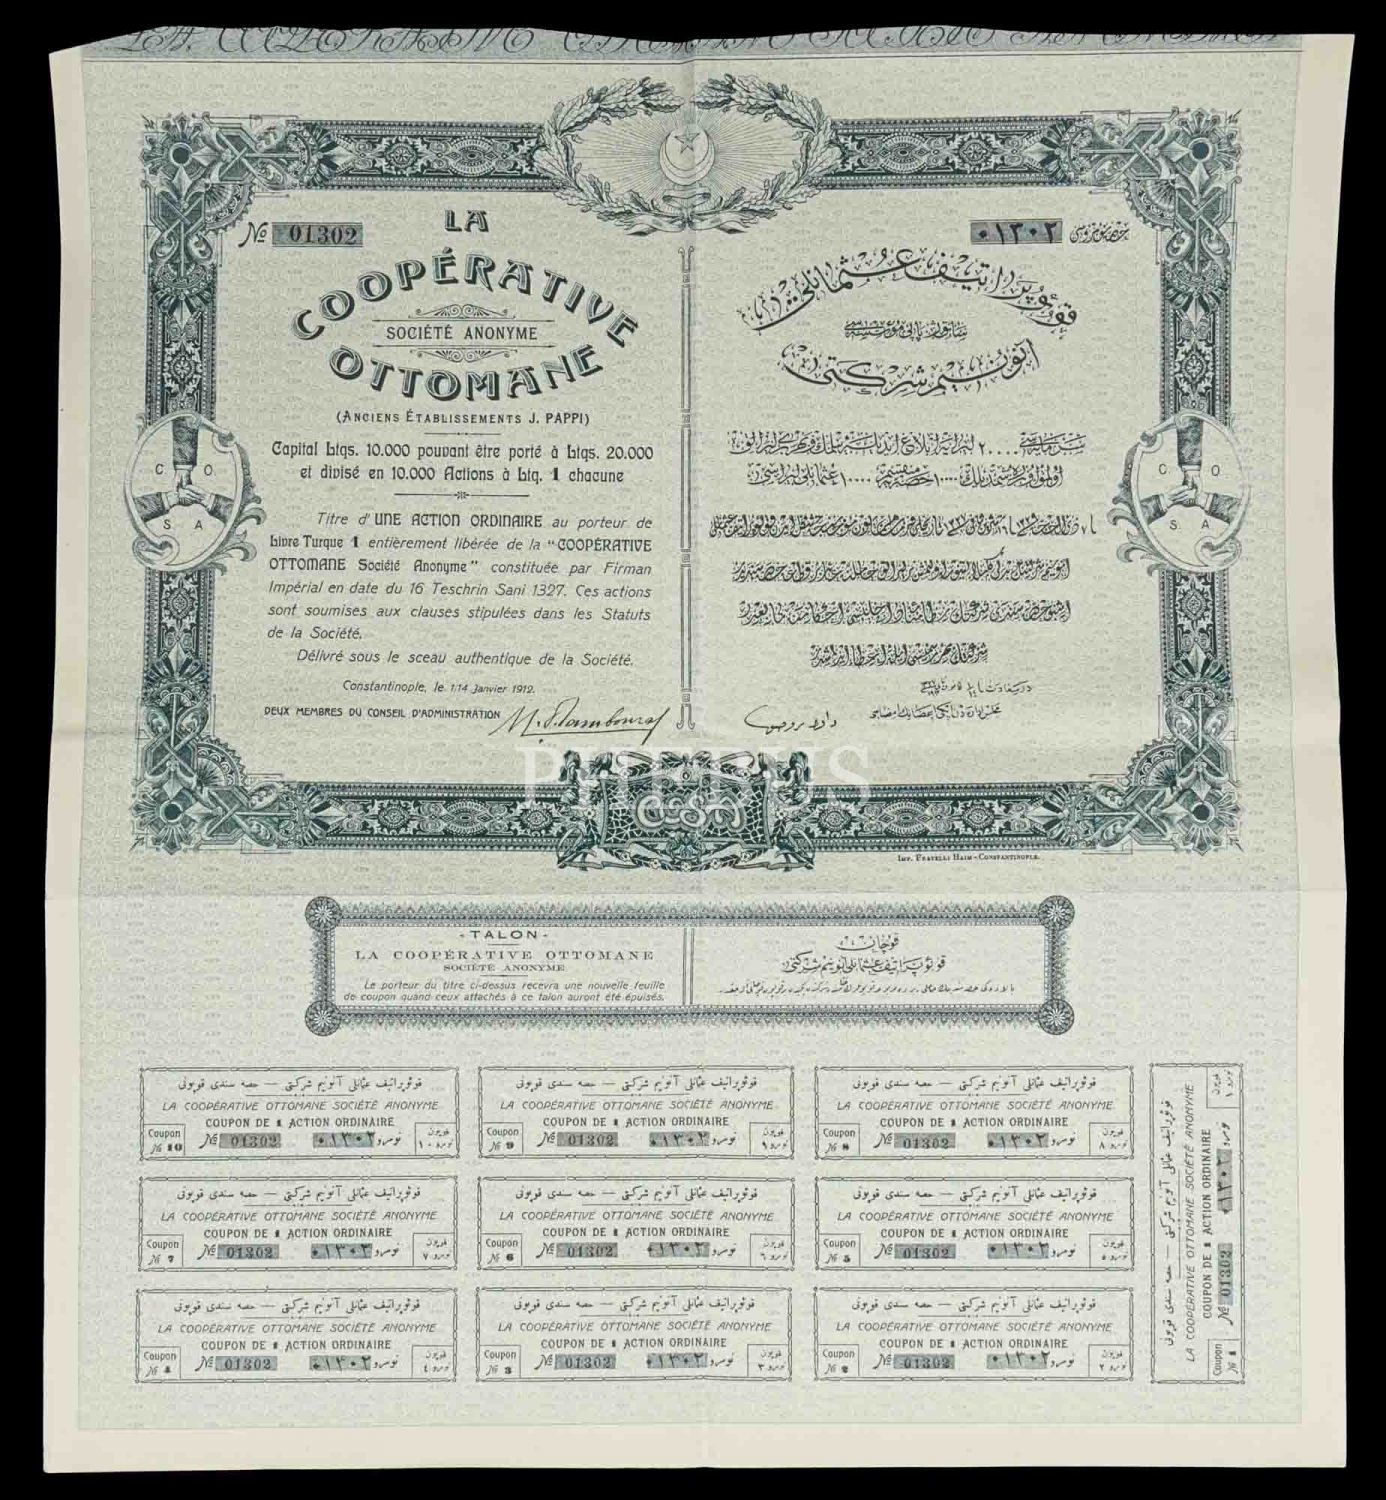 Osmanlı Kooperatif Anonim Şirketi, 1912 tarihli bir paylık hisse senedi...